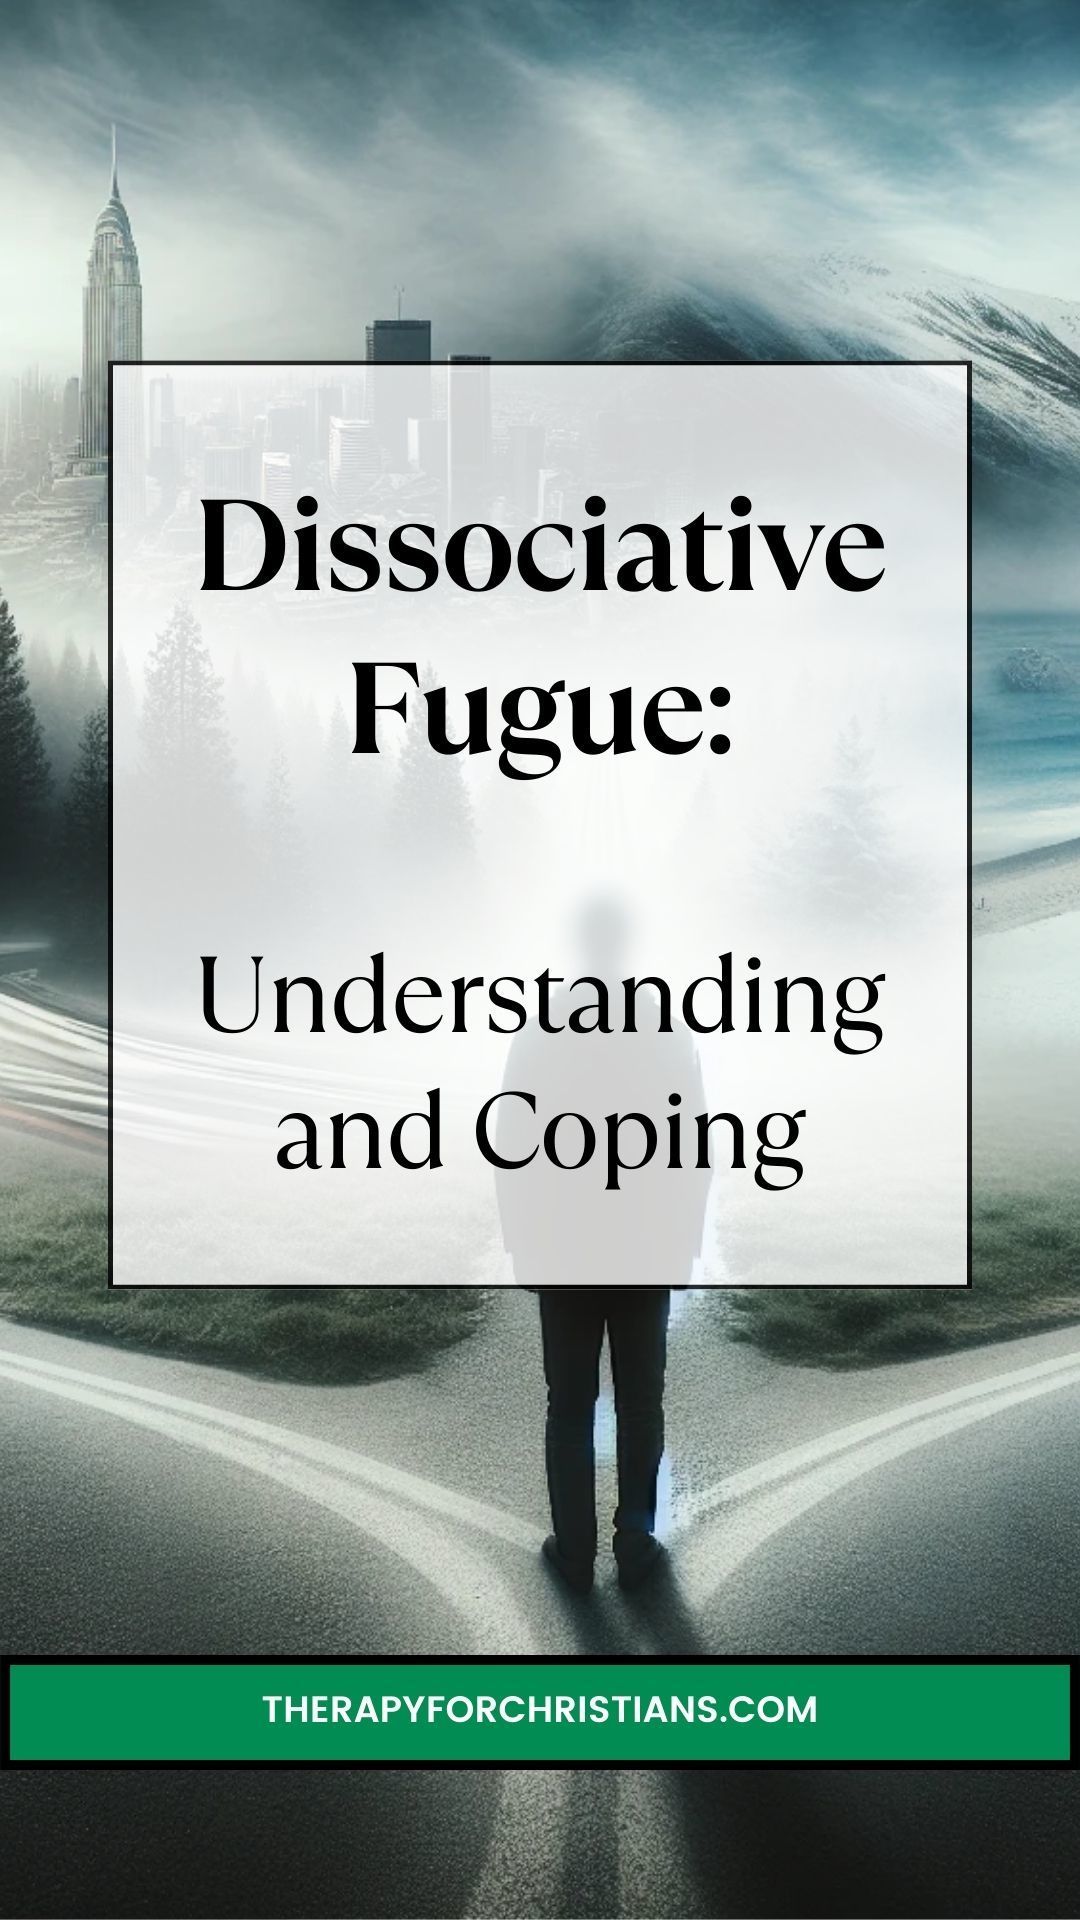 psychogenic fugue and Dissociative fugue pin 